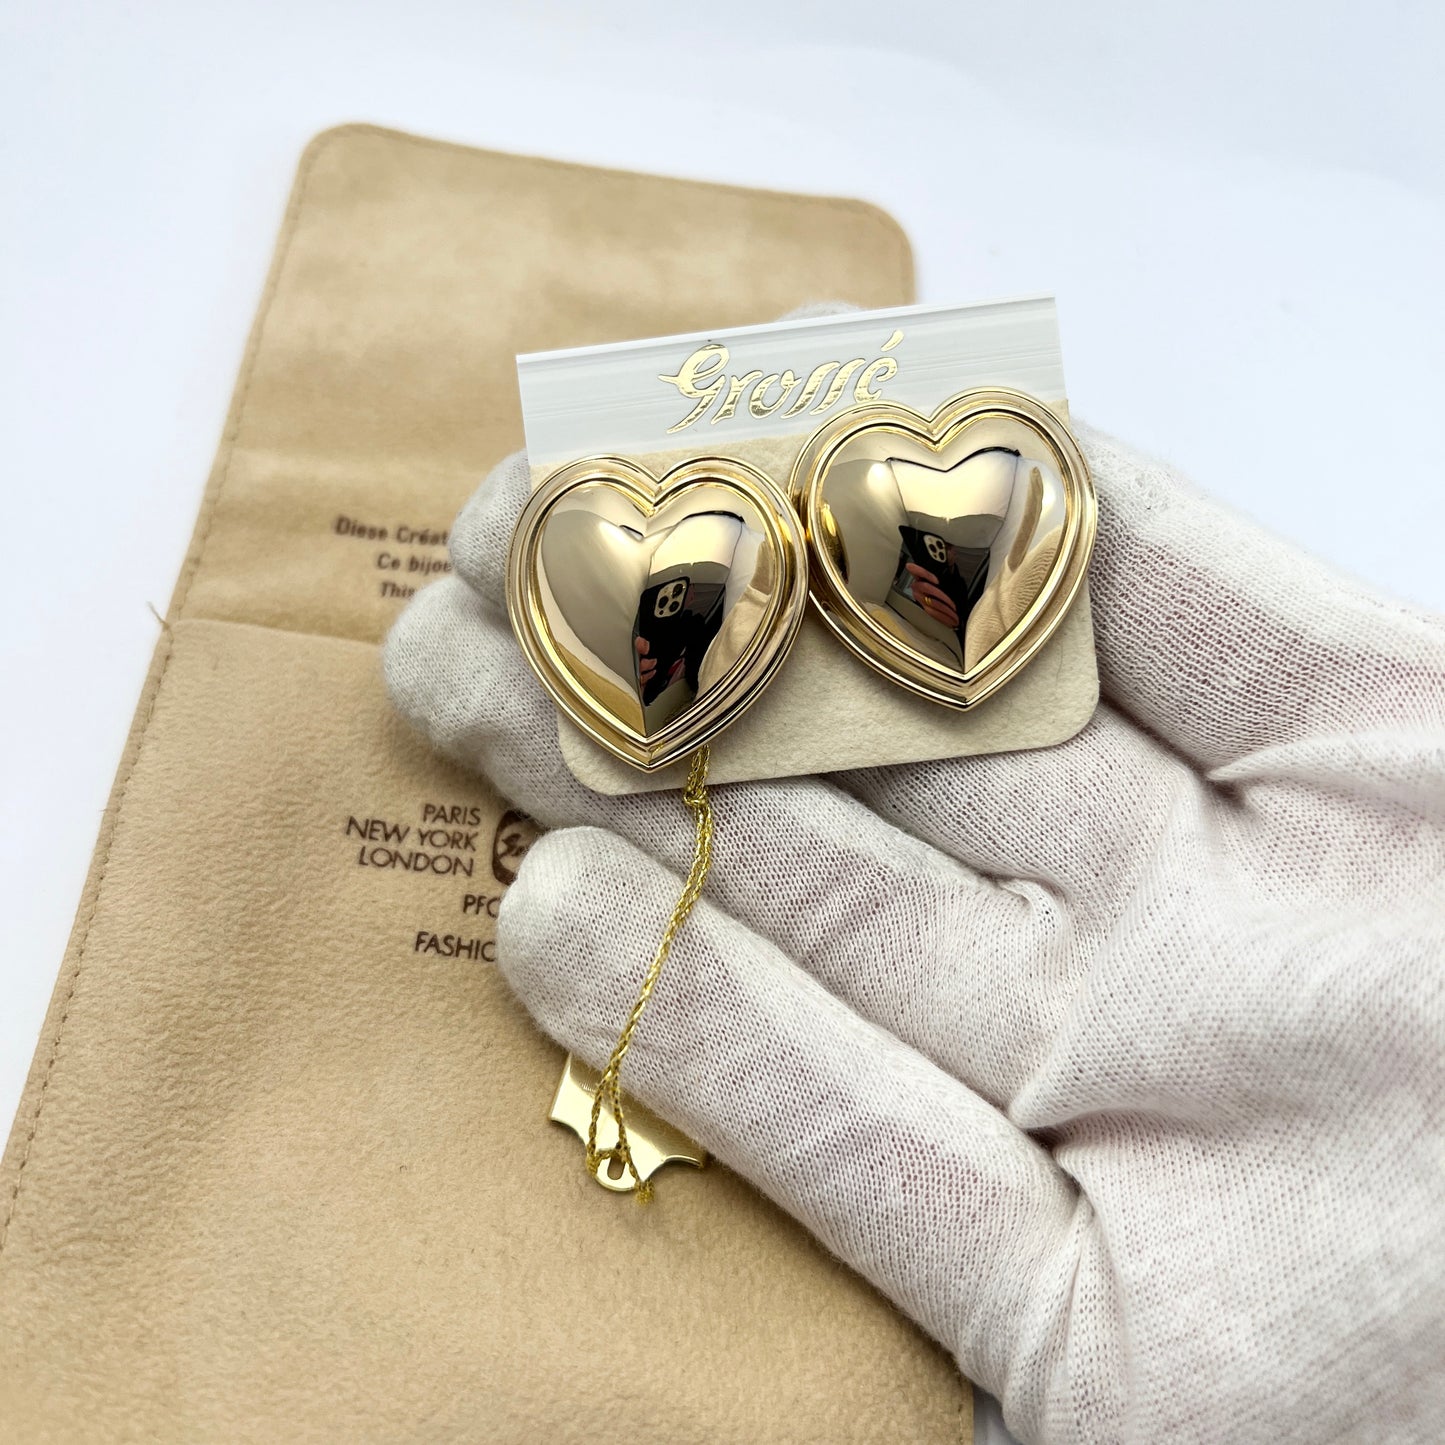 Grossé Germany. Contemporary Unworn Costume Jewelry Large Heart Earrings.